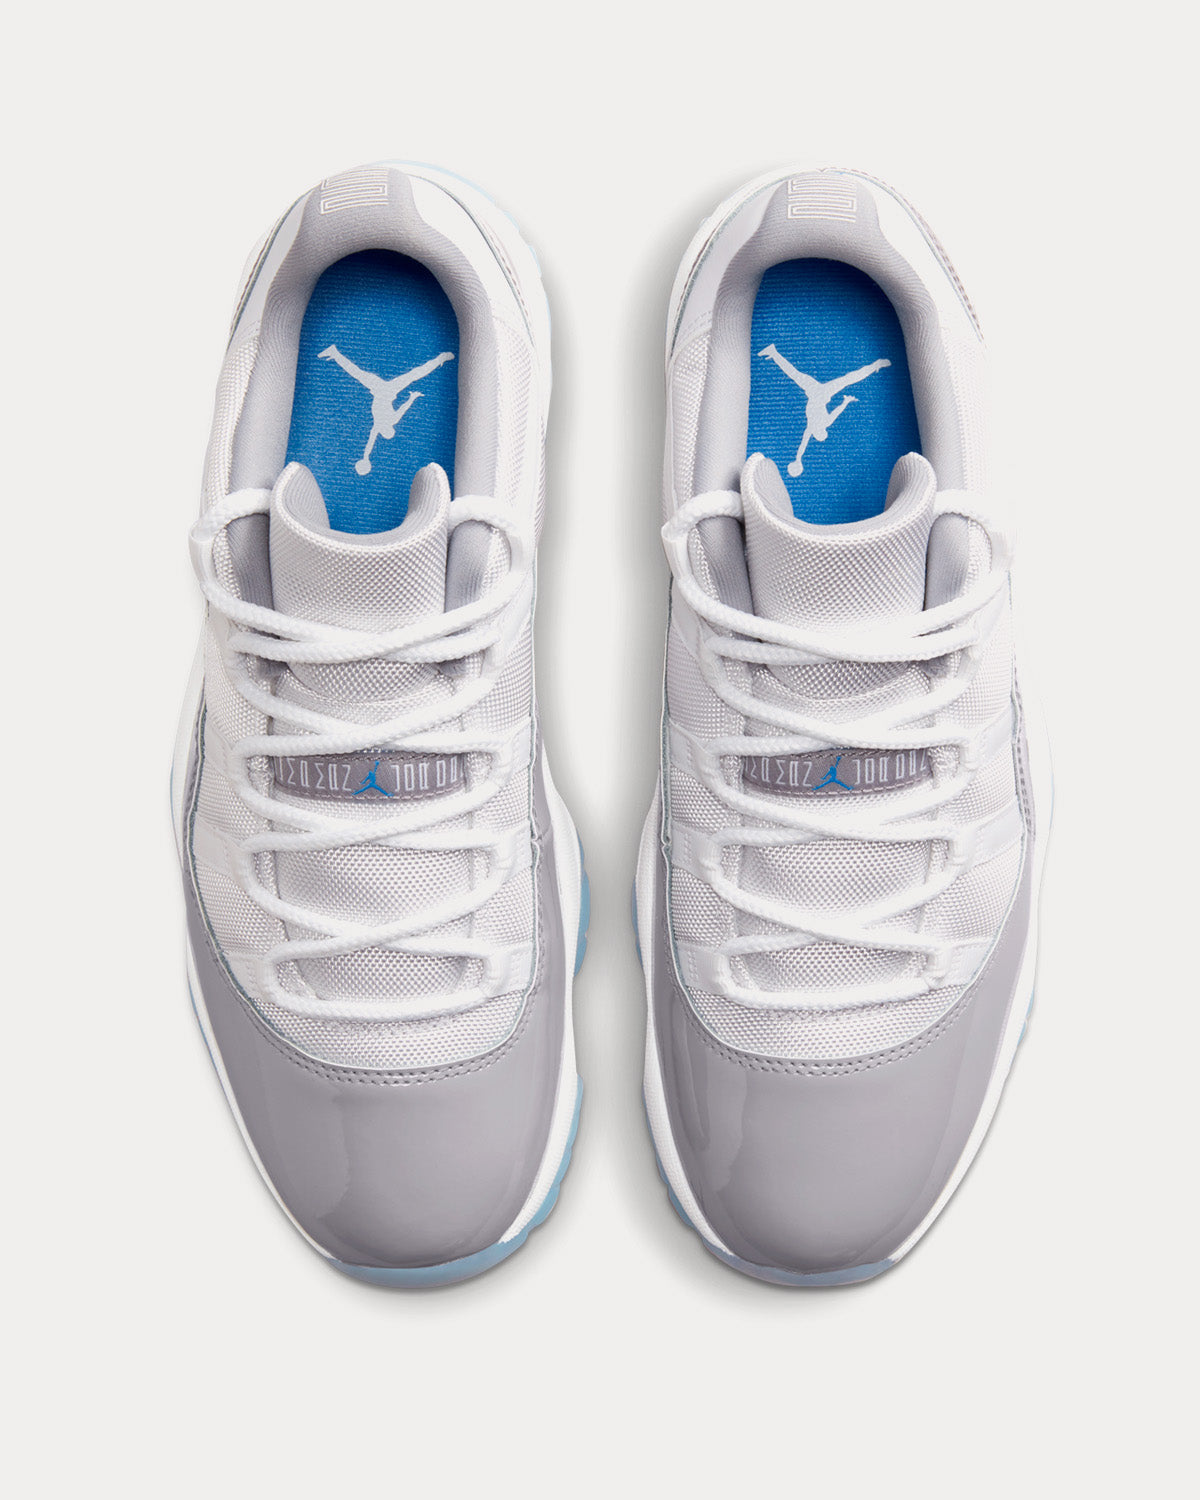 Jordan - Air Jordan 11 Retro Low White / University Blue / Cement Grey Low Top Sneakers